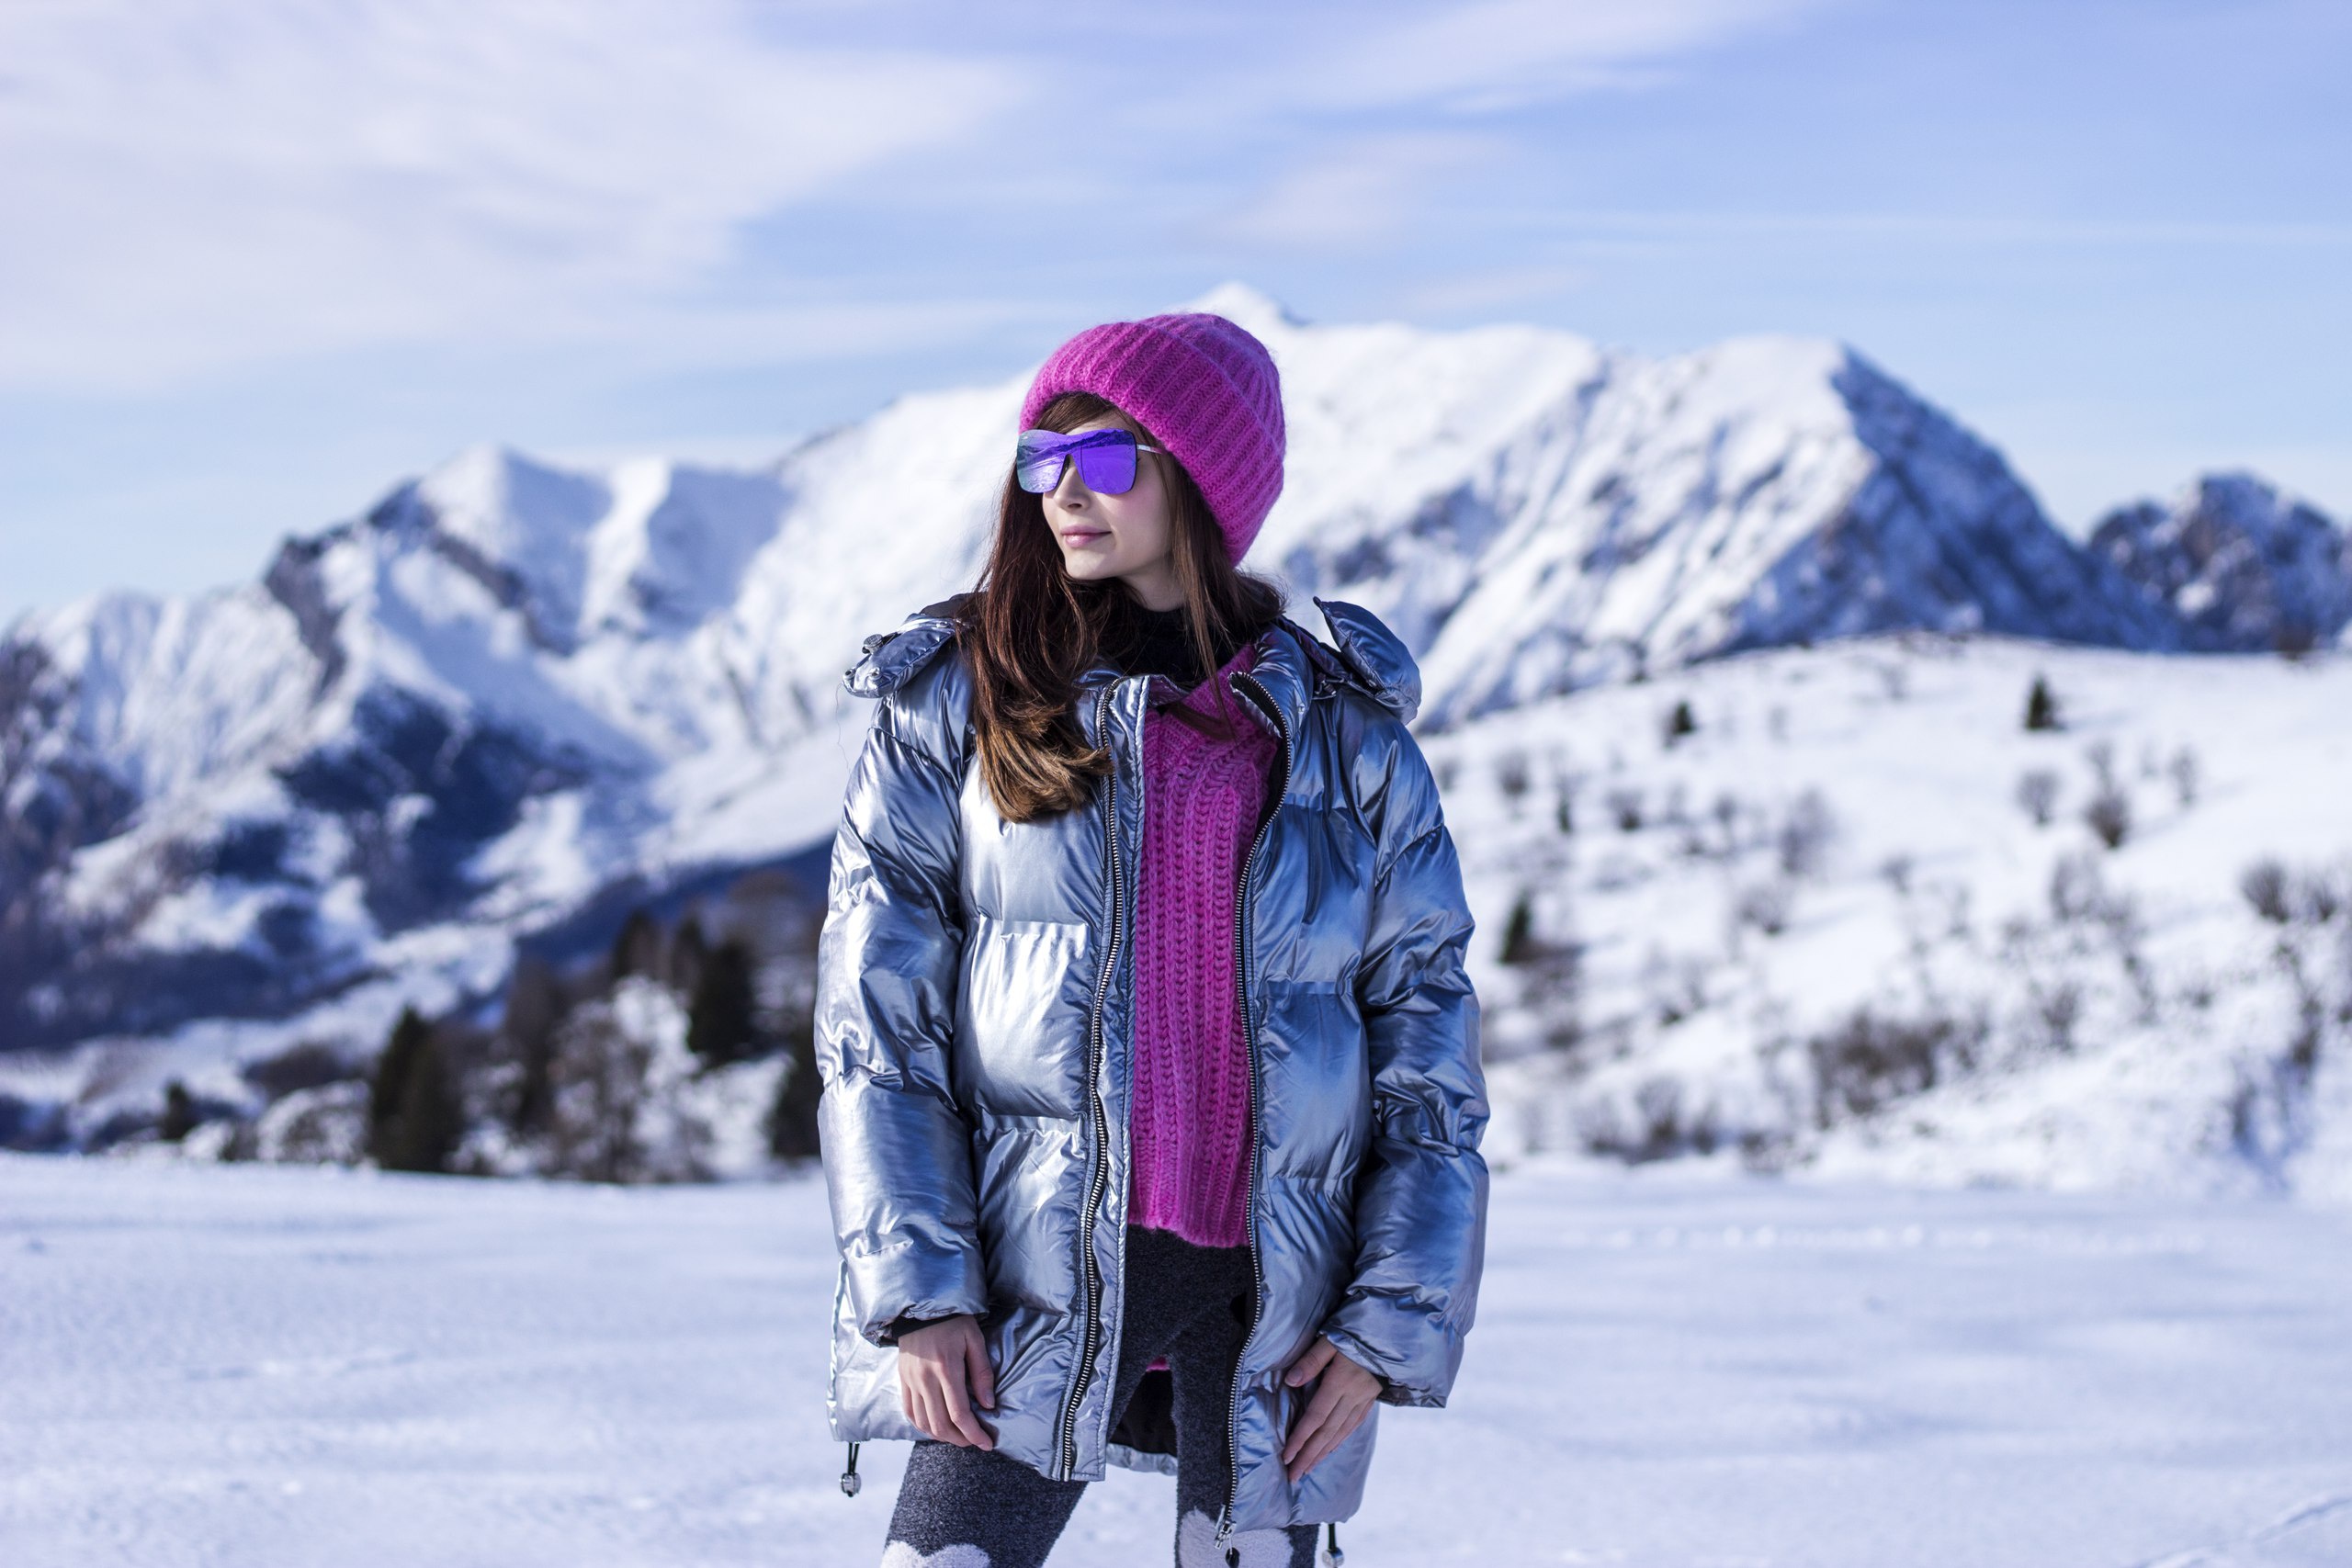 Зимний день зимняя куртка. Финская шапка Винтер спорт. Куртки на зиму. Девушка в зимней одежде. Красивые девушки в зимней одежде.